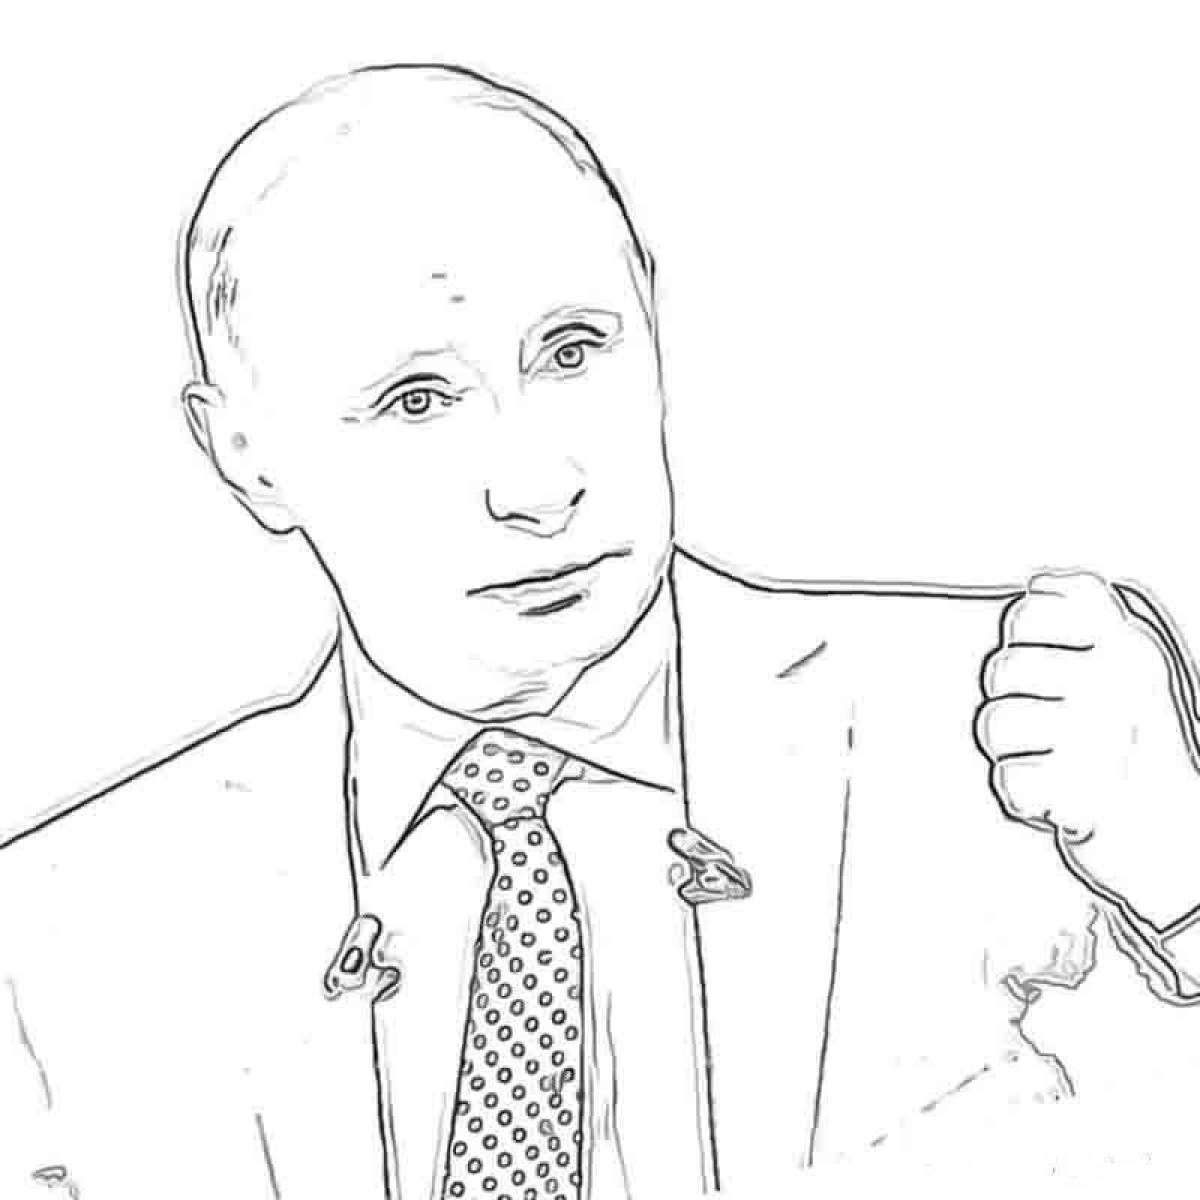 Путин раскраска